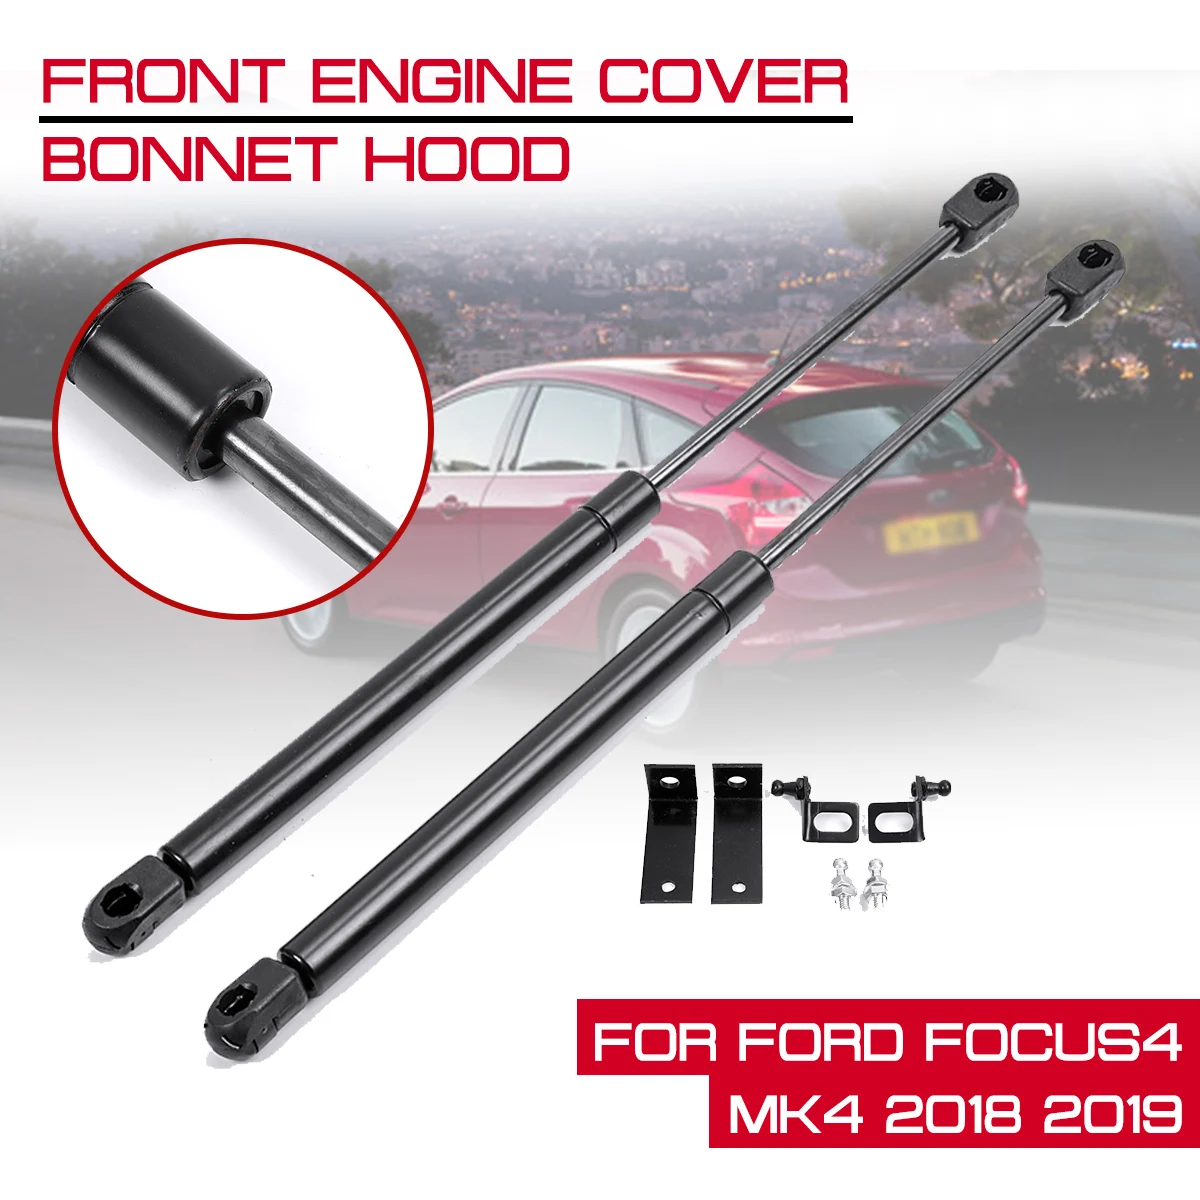 

For Focus4 MK4 2018 2019 Struts Bar Support Rod Arm Gas Spring Front Engine Cover Bonnet Hood Shock Lift Strut